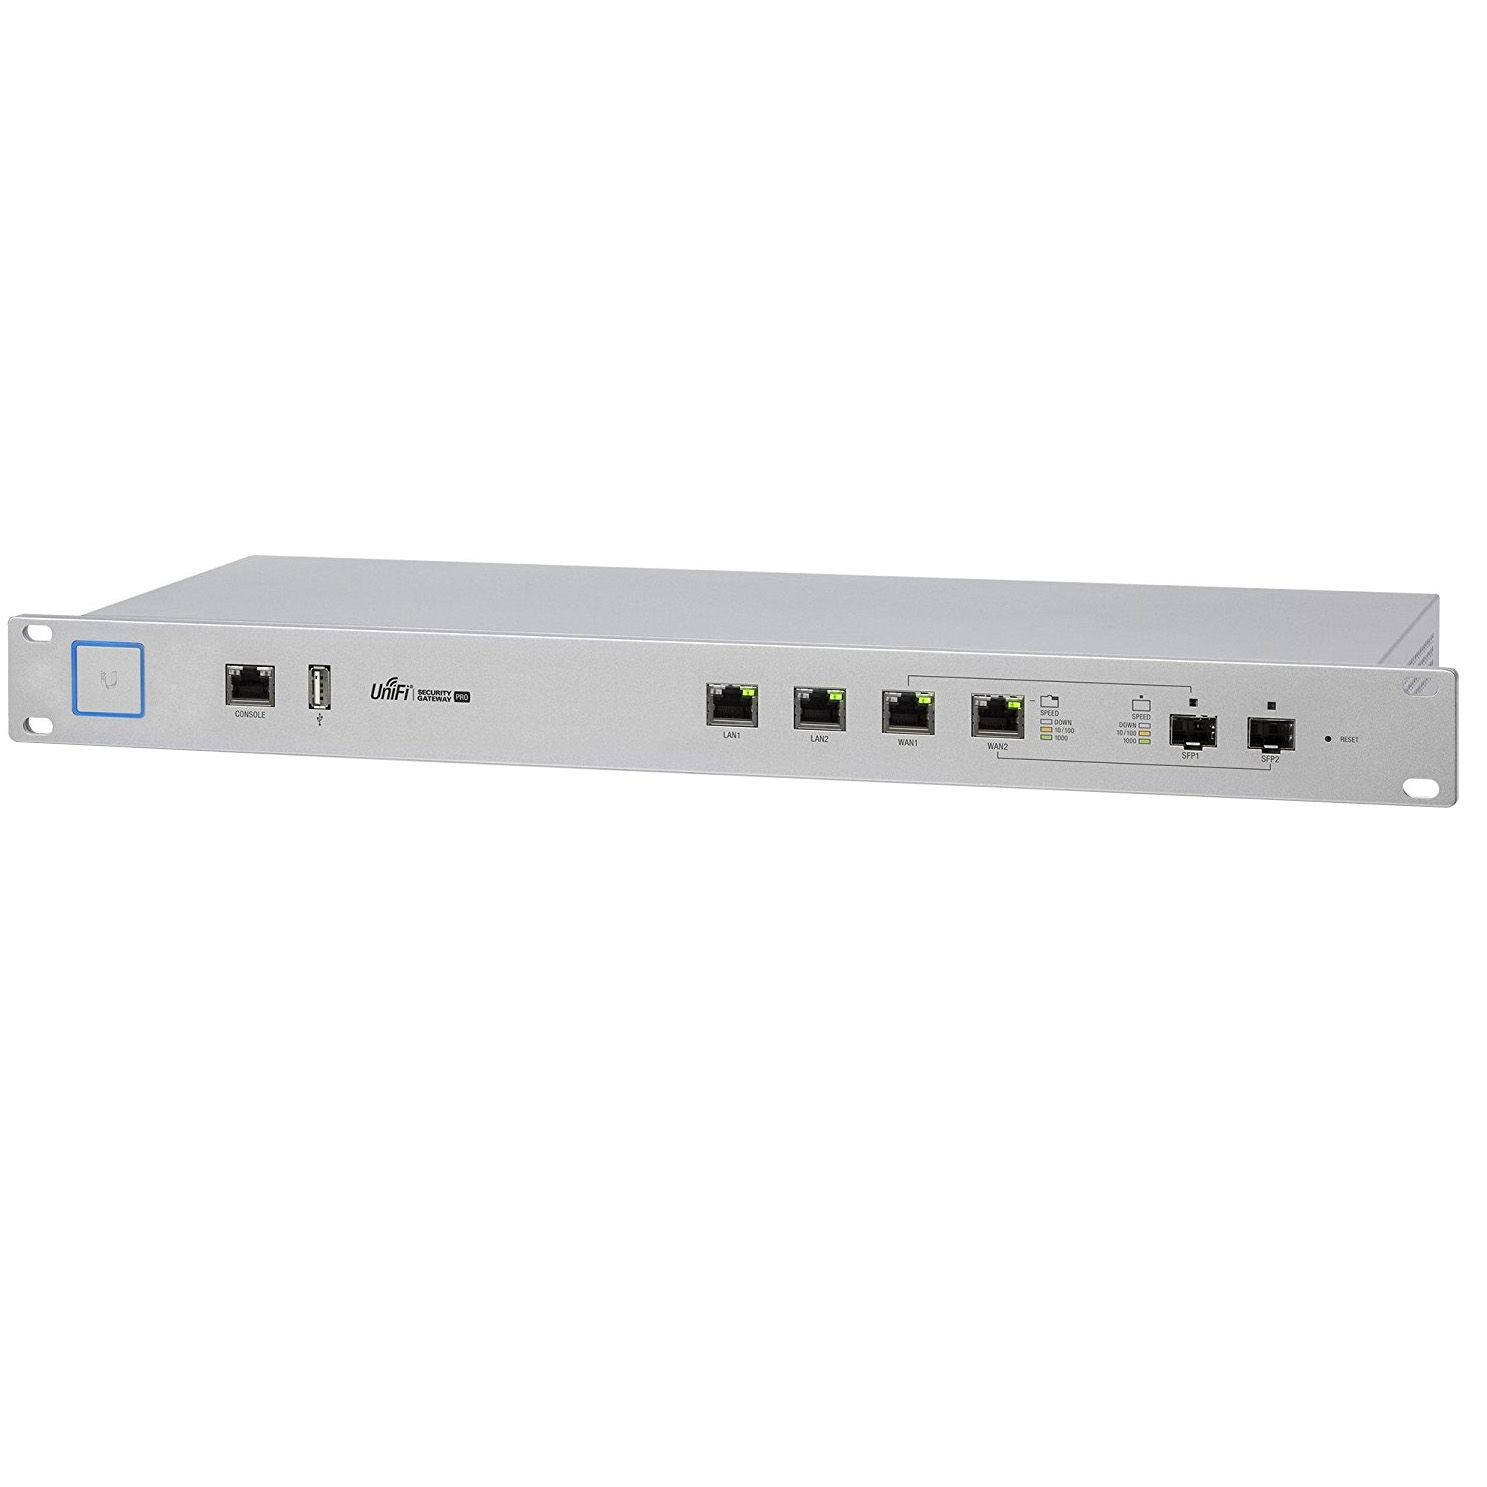 UBIQUITI USG-PRO-4 UniFi USG PRO Enterprise Security Gateway Broadband Router_2